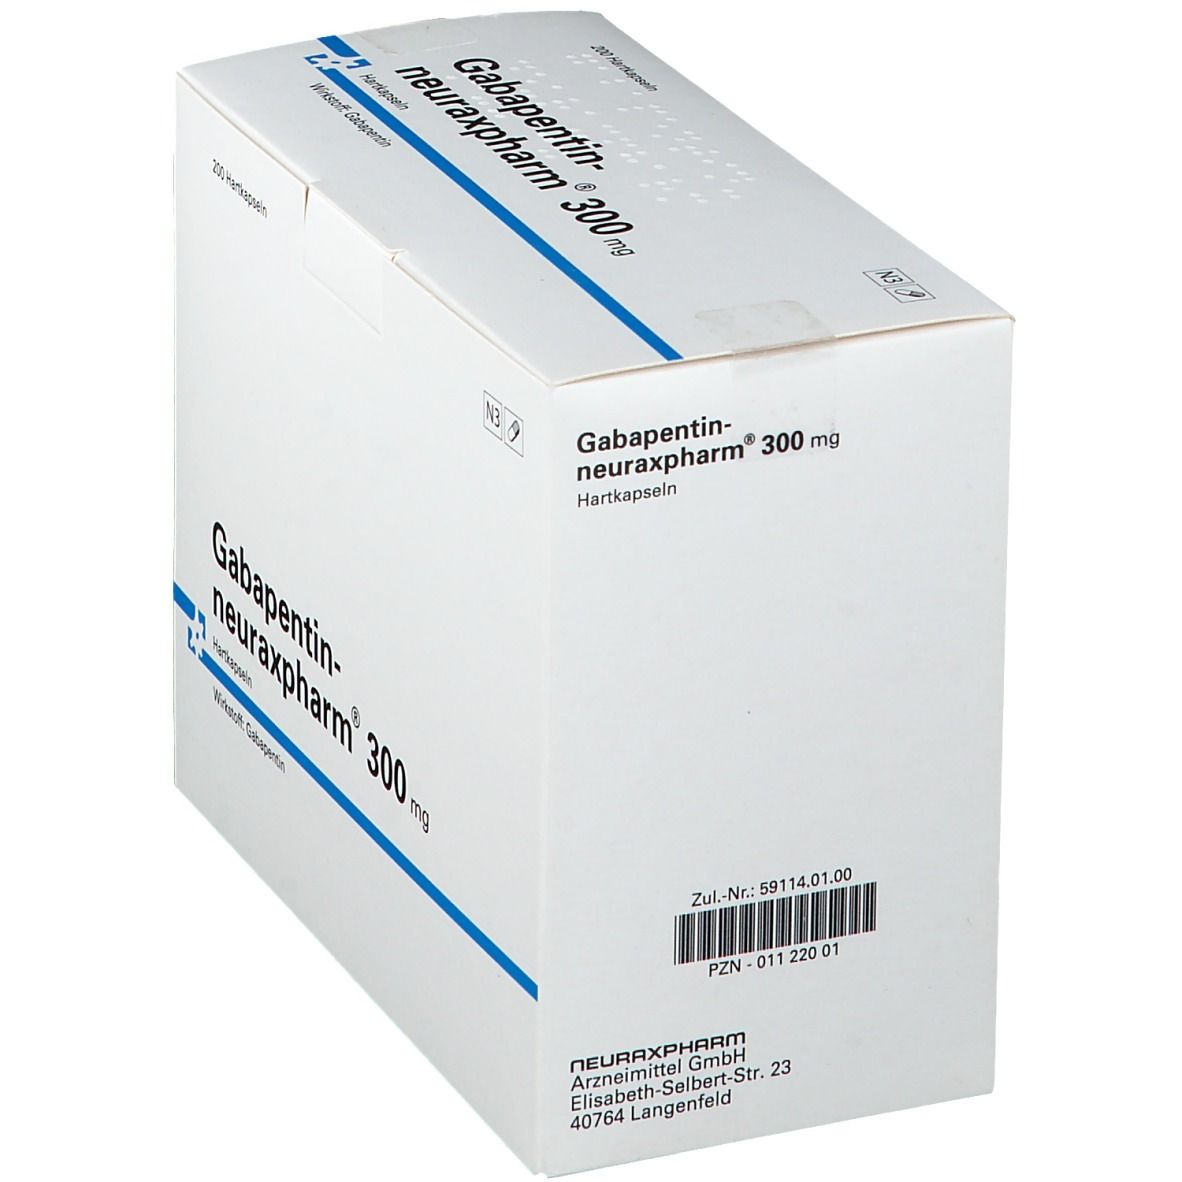 Gabapentin-neuraxpharm® 300 mg